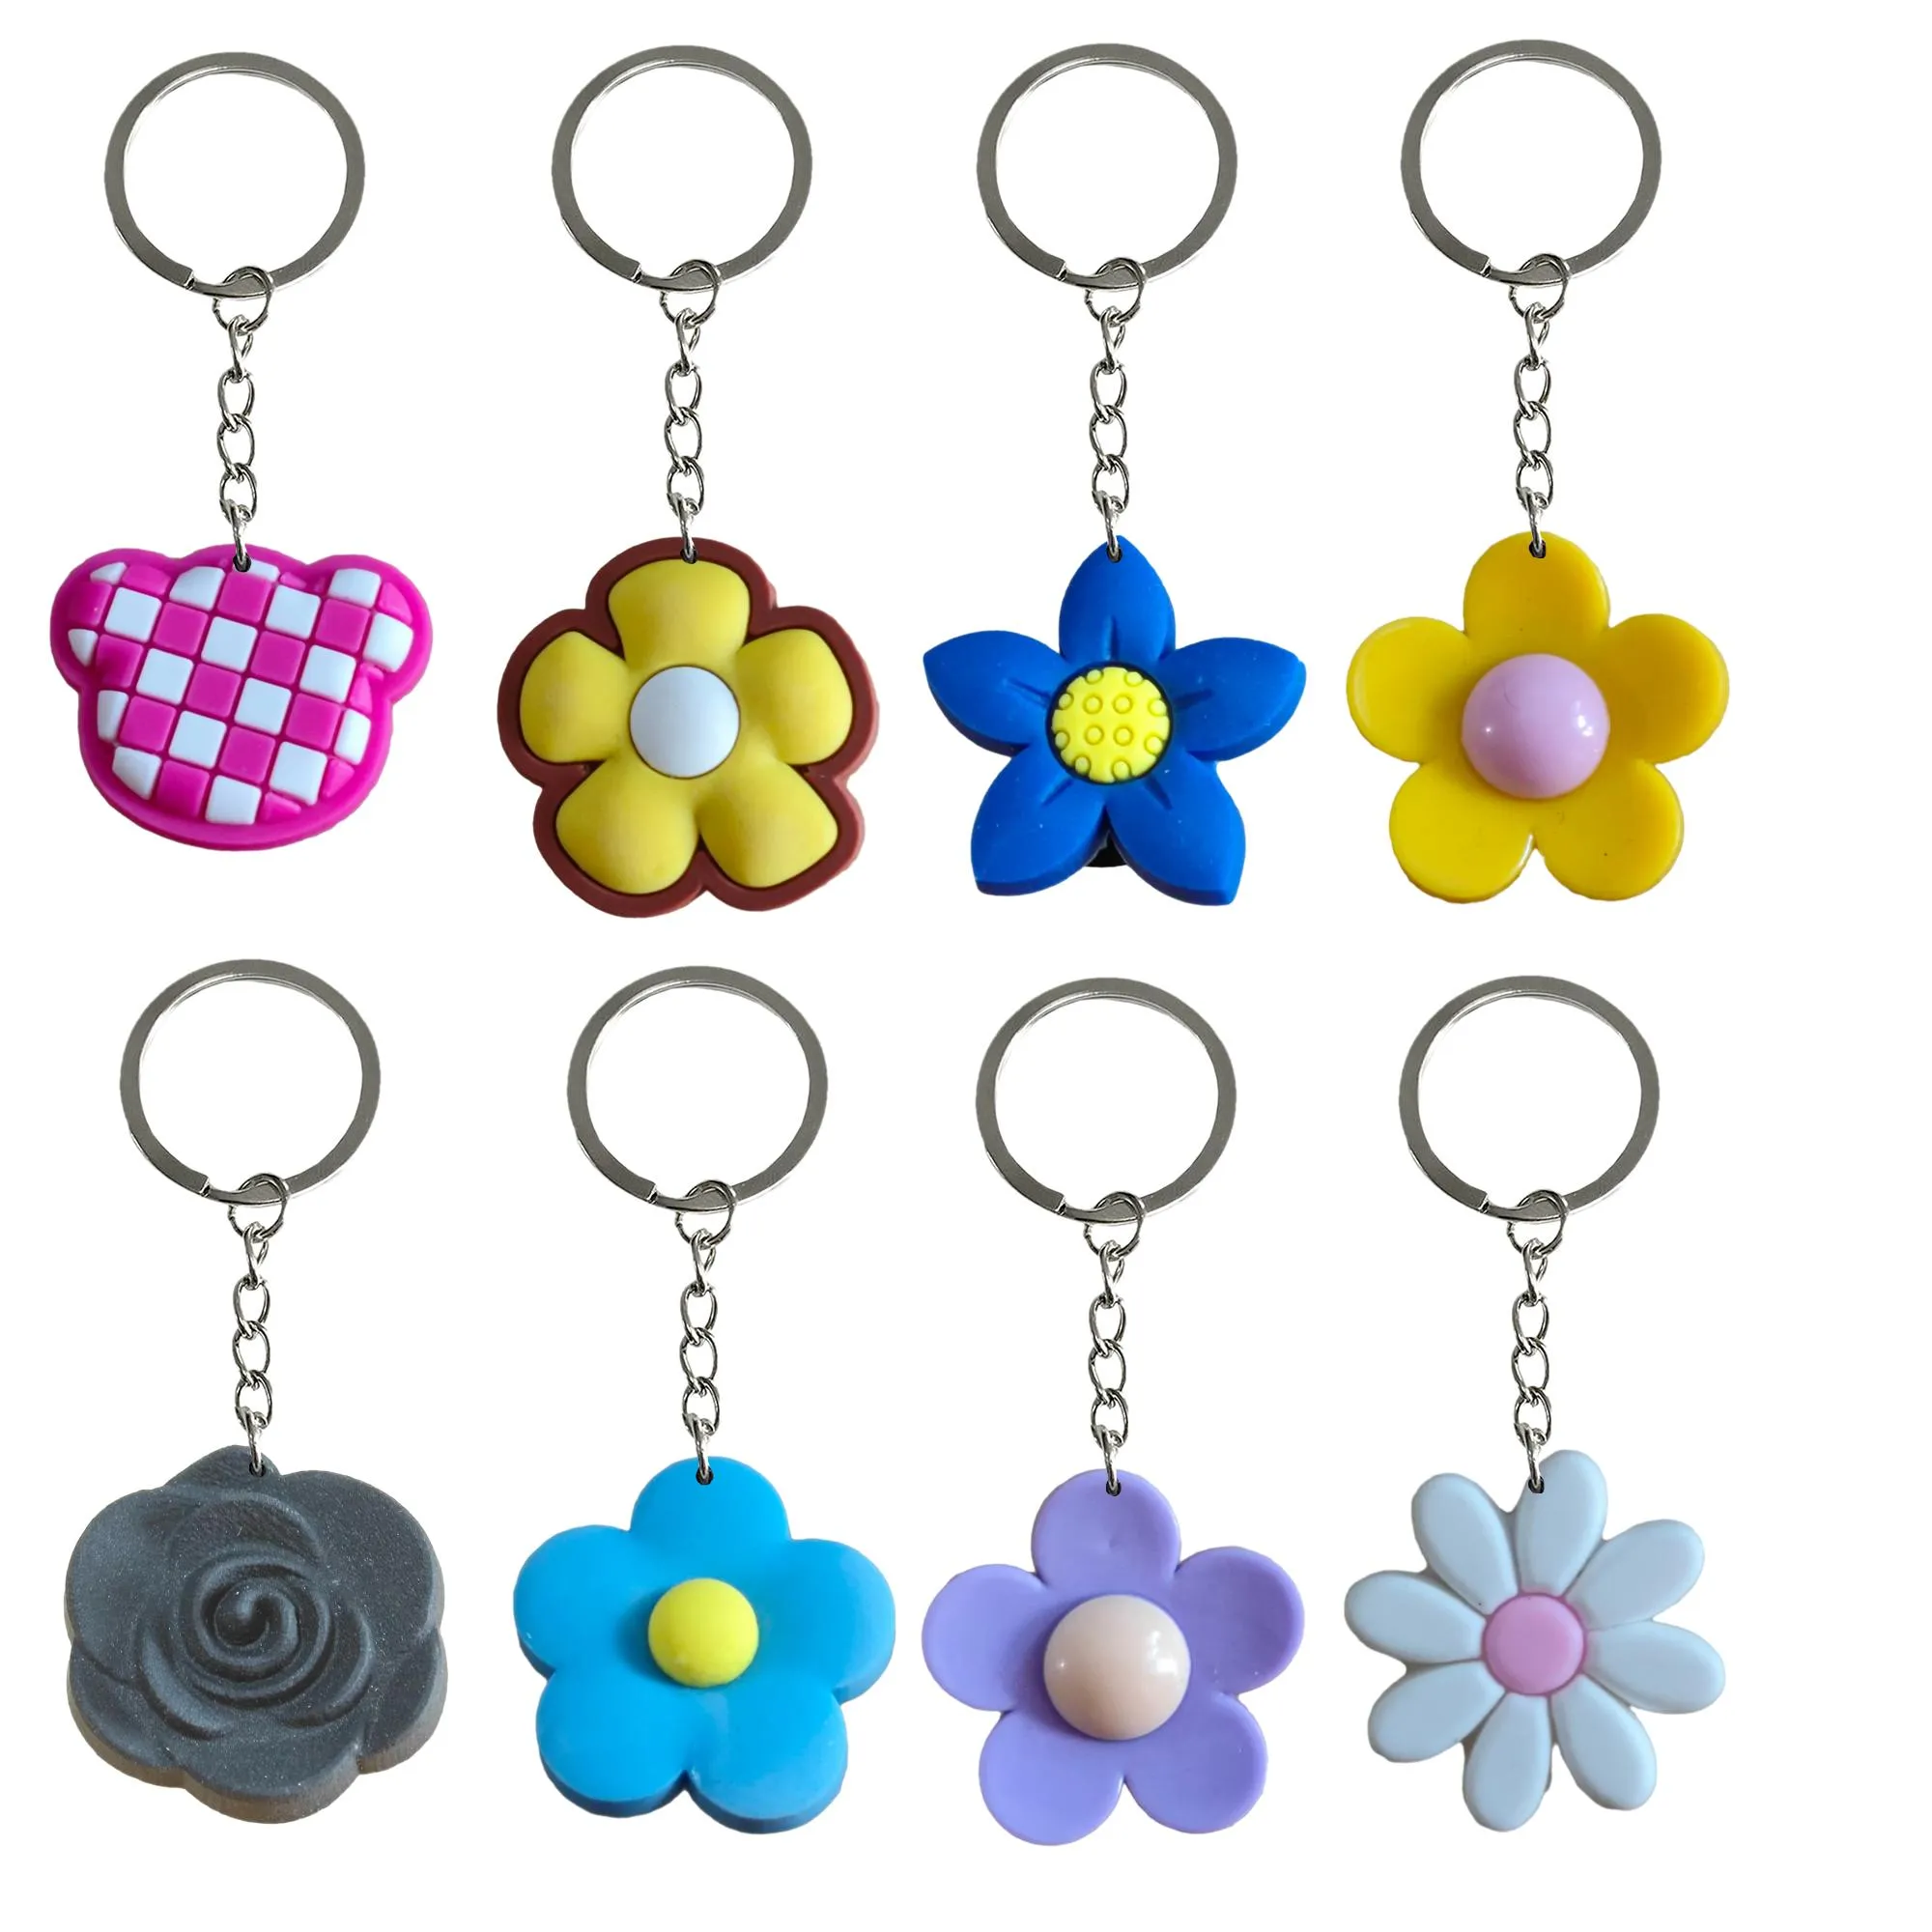 Autres accessoires de mode Fleur 2 12 Personnage colorf cool de porte-clés avec pendentifs de bracelet pour enfants Favors d'anniversaire Favors B otn3t